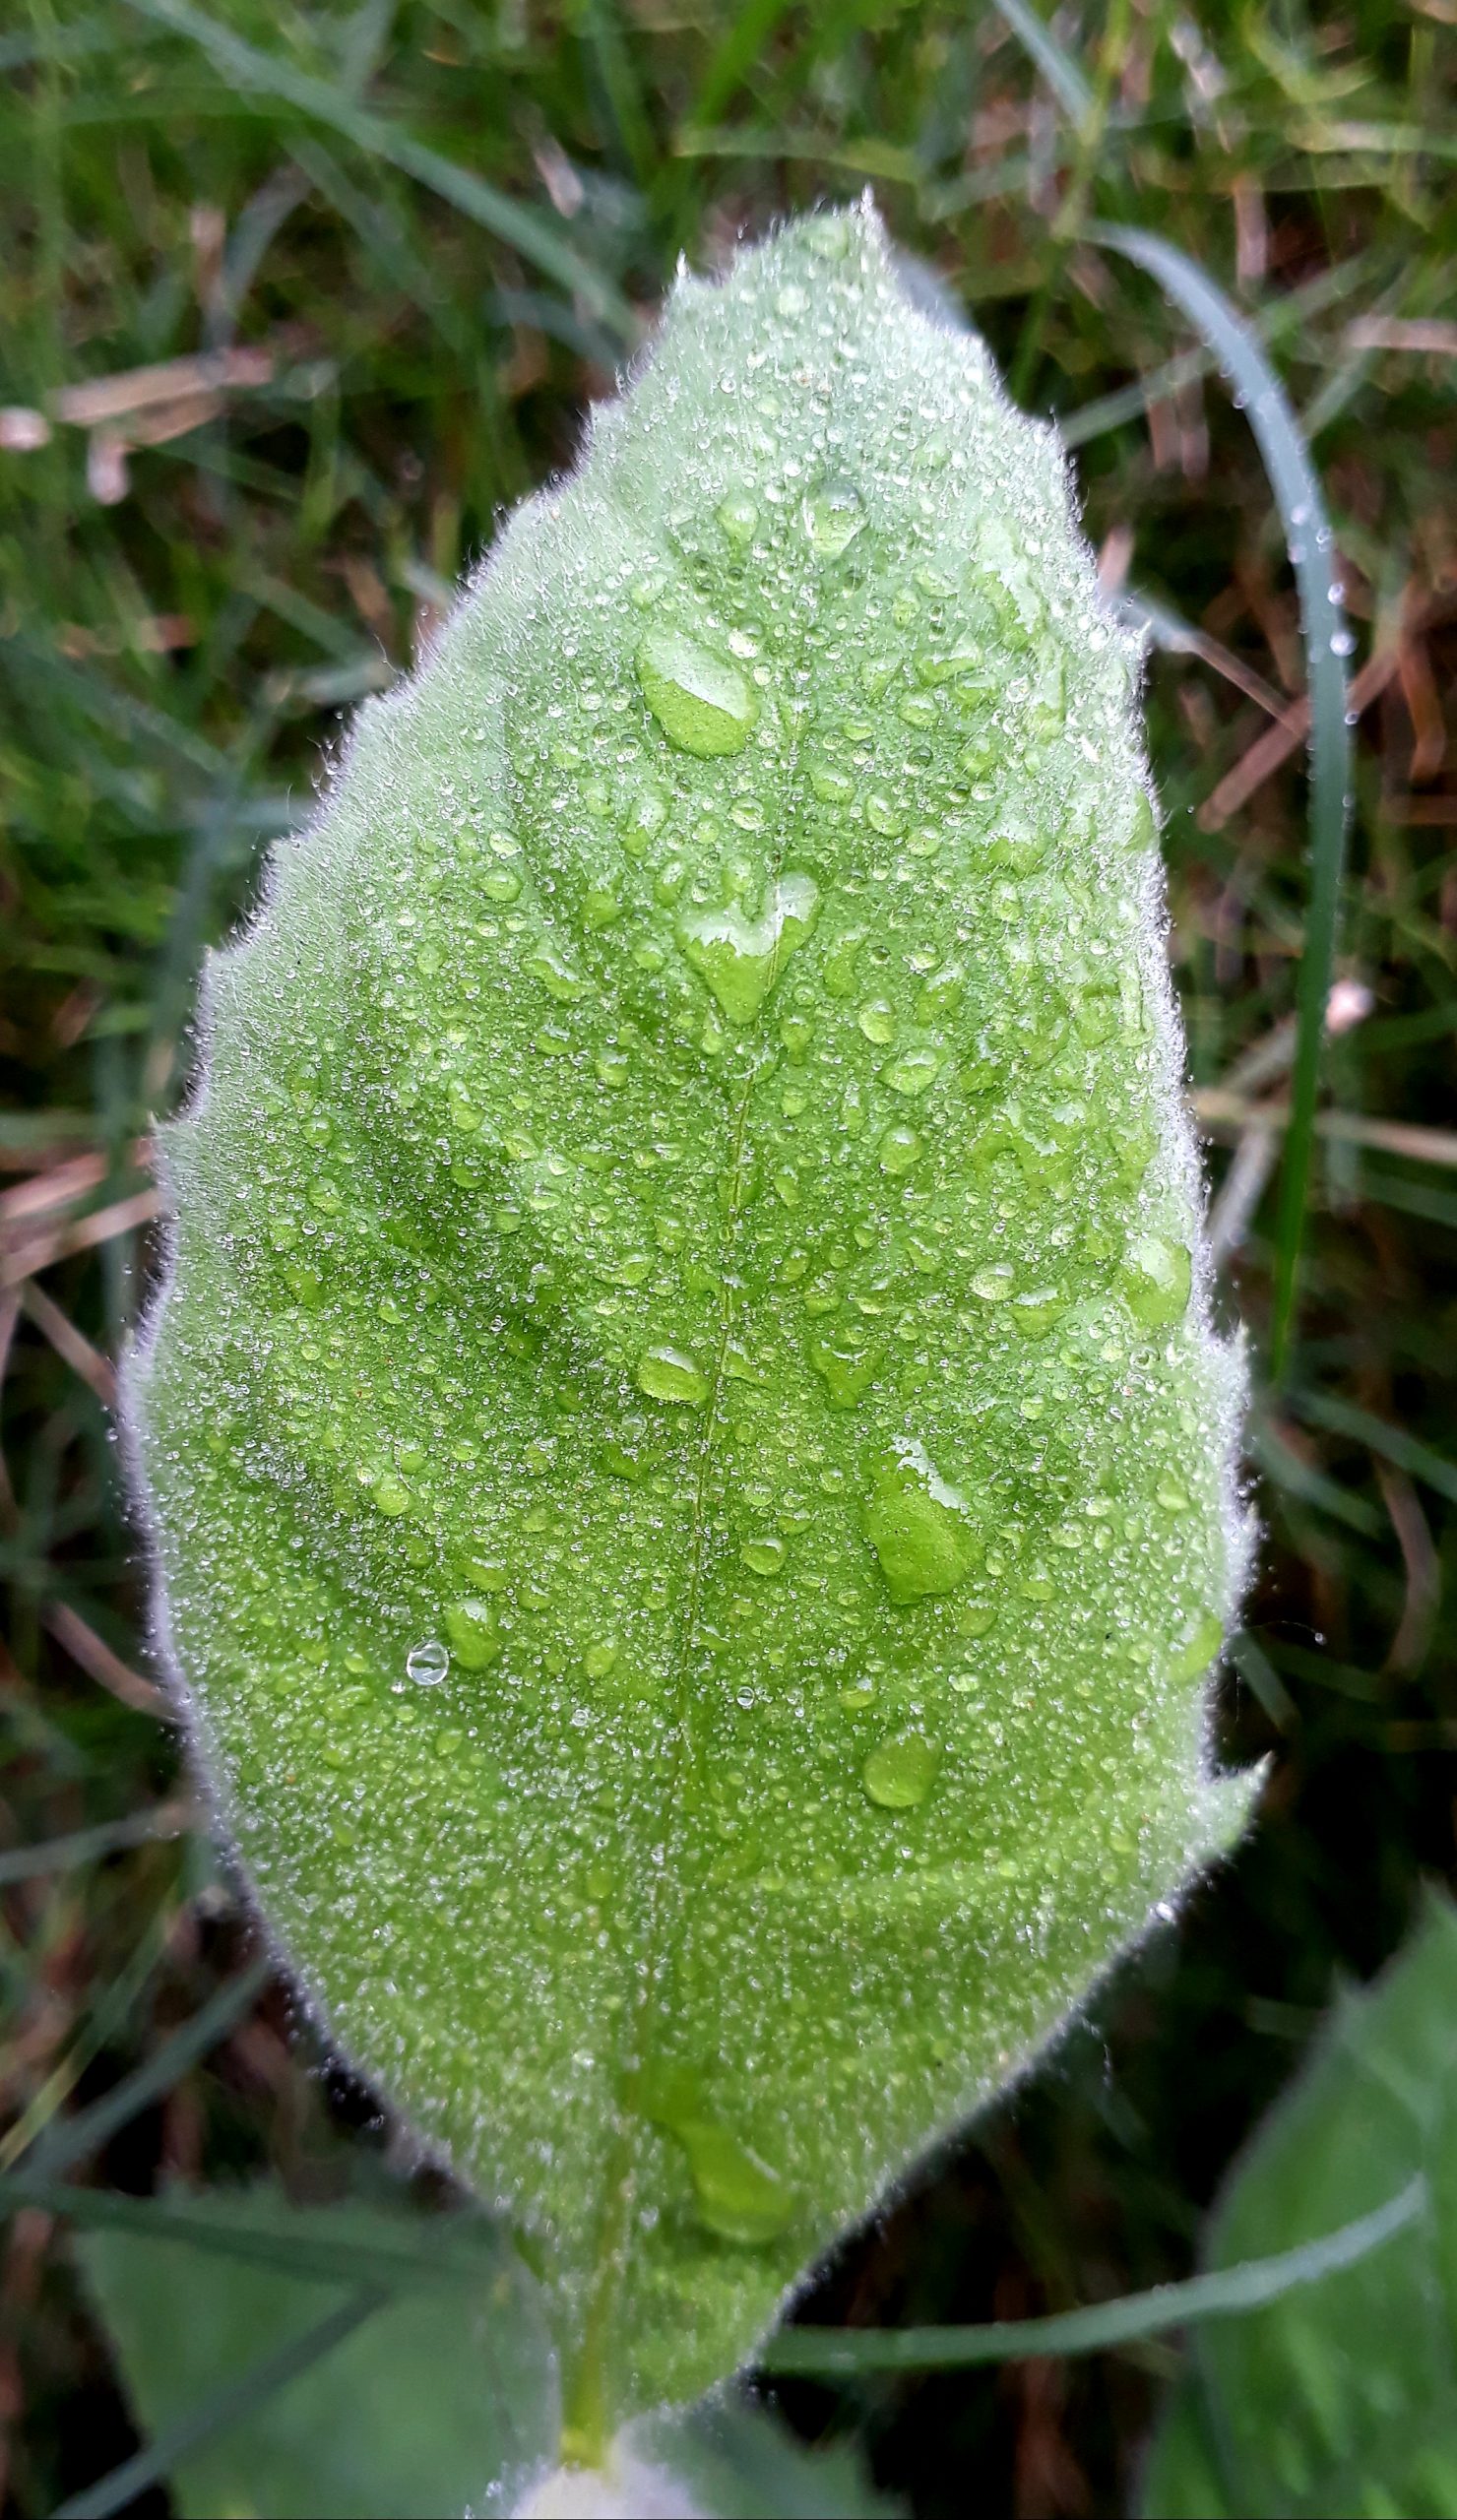 Moisture on a leaf